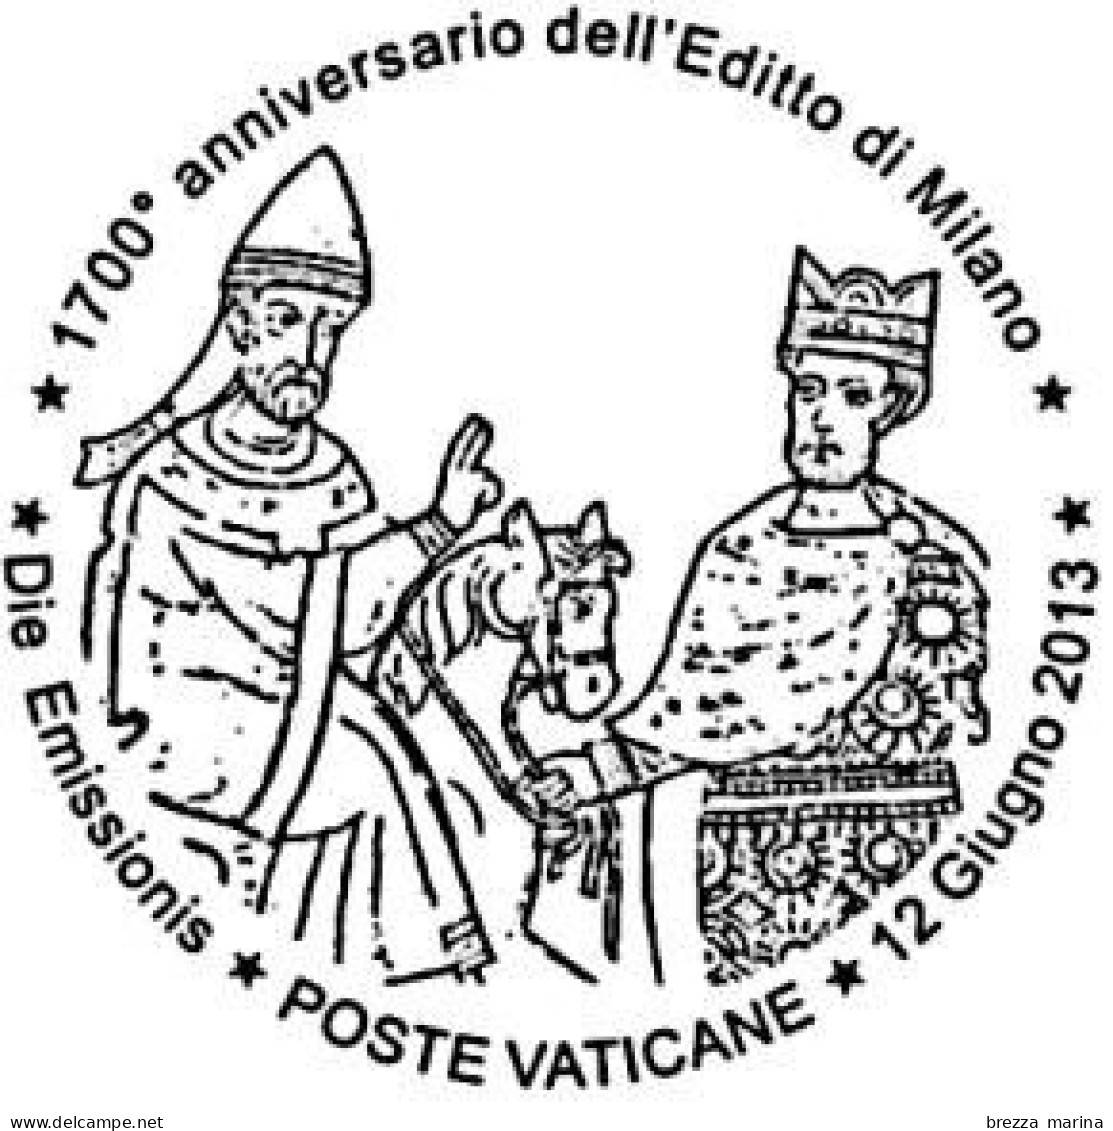 VATICANO - Usato - 2013 - 1700° Dell'Editto Di Milano (congiunta Con L'Italia) - Costantino I E Papa Silvestro - 2.50 - Usados